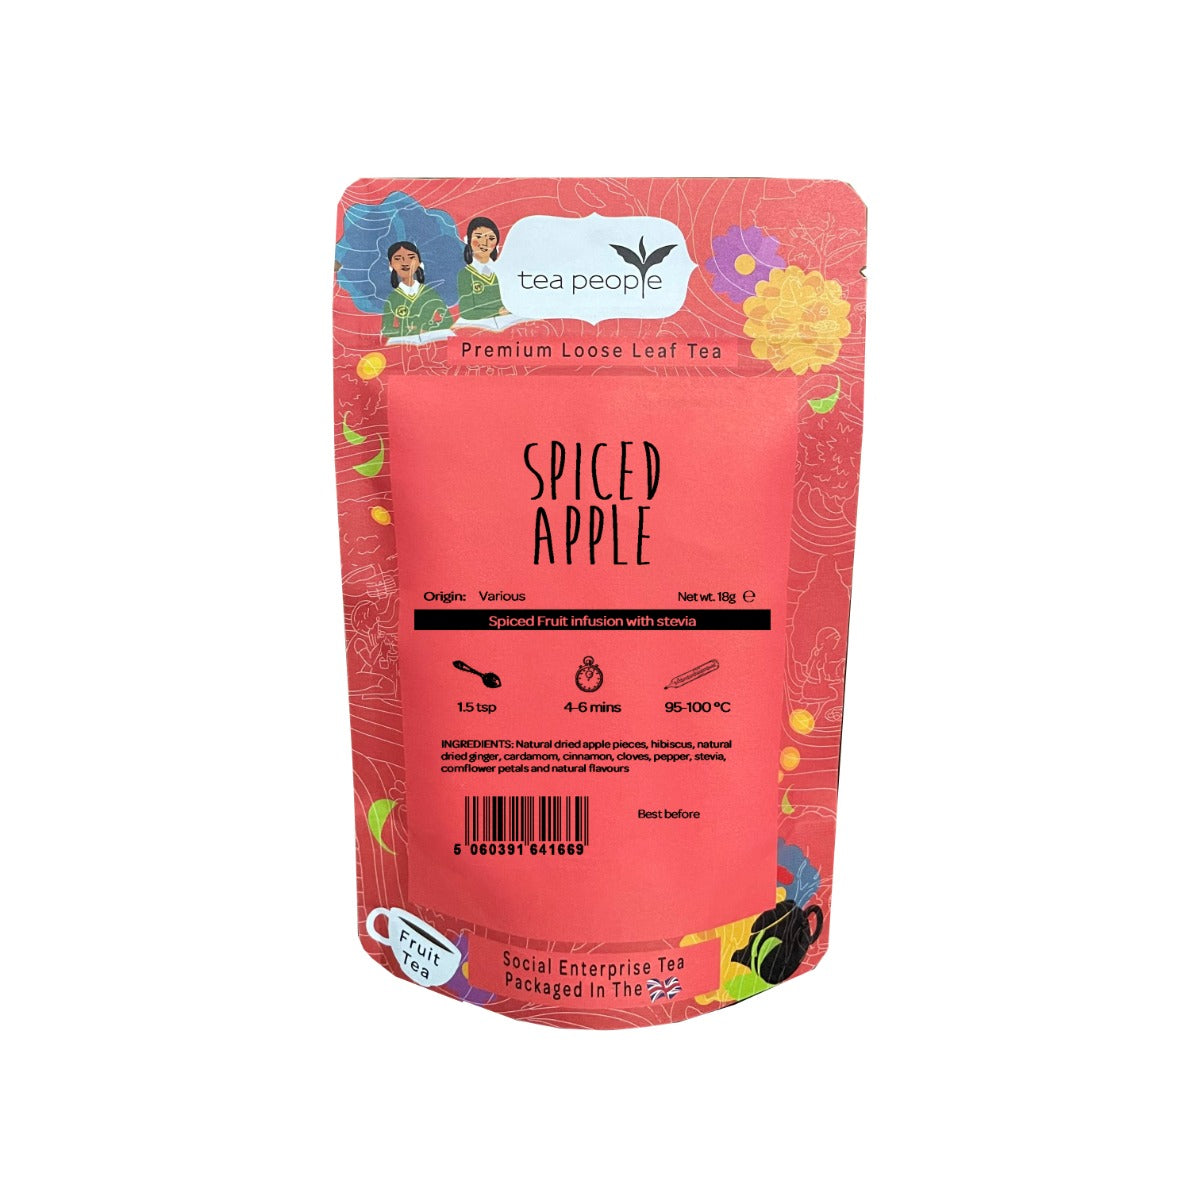 Spiced Apple - Loose Fruit Tea - Loose Tea Taster Pack